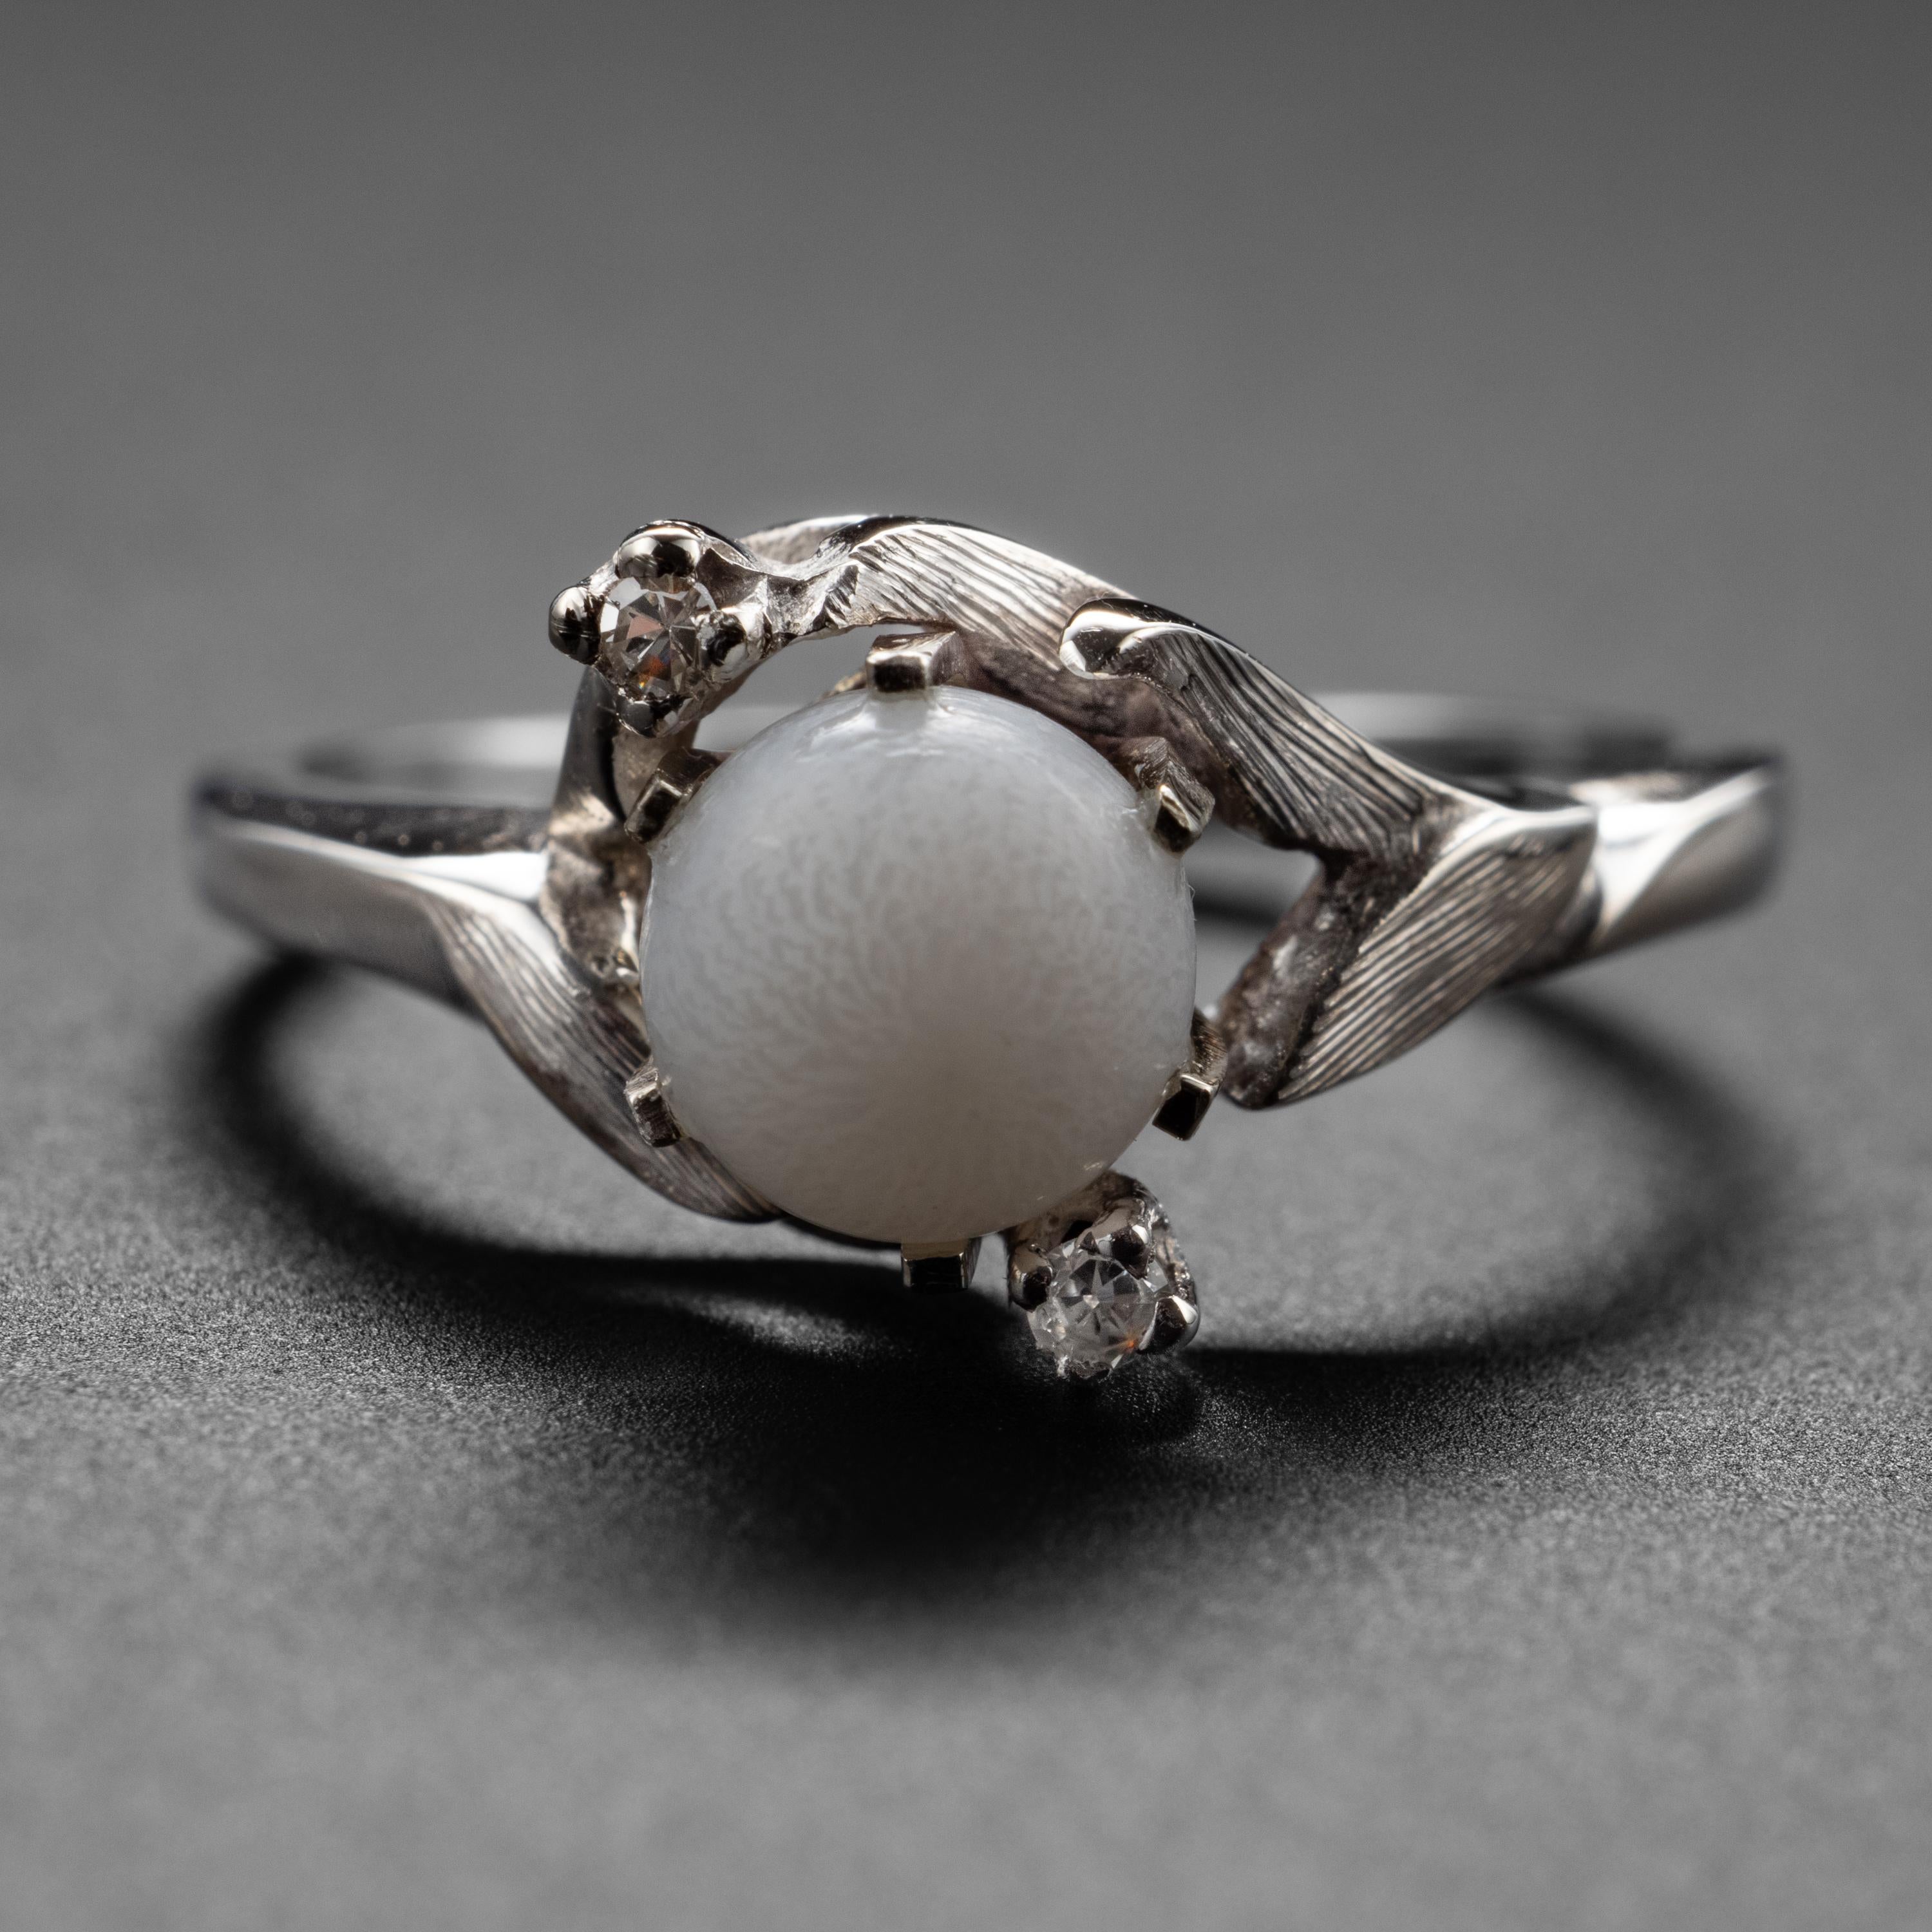 Récemment montée dans une bague rétro (début des années 1950) en or blanc 14K et diamant, une perle fascinante et rare dont vous ne soupçonniez probablement pas l'existence : une perle de palourde d'eau salée naturelle. La plupart des gens pensent